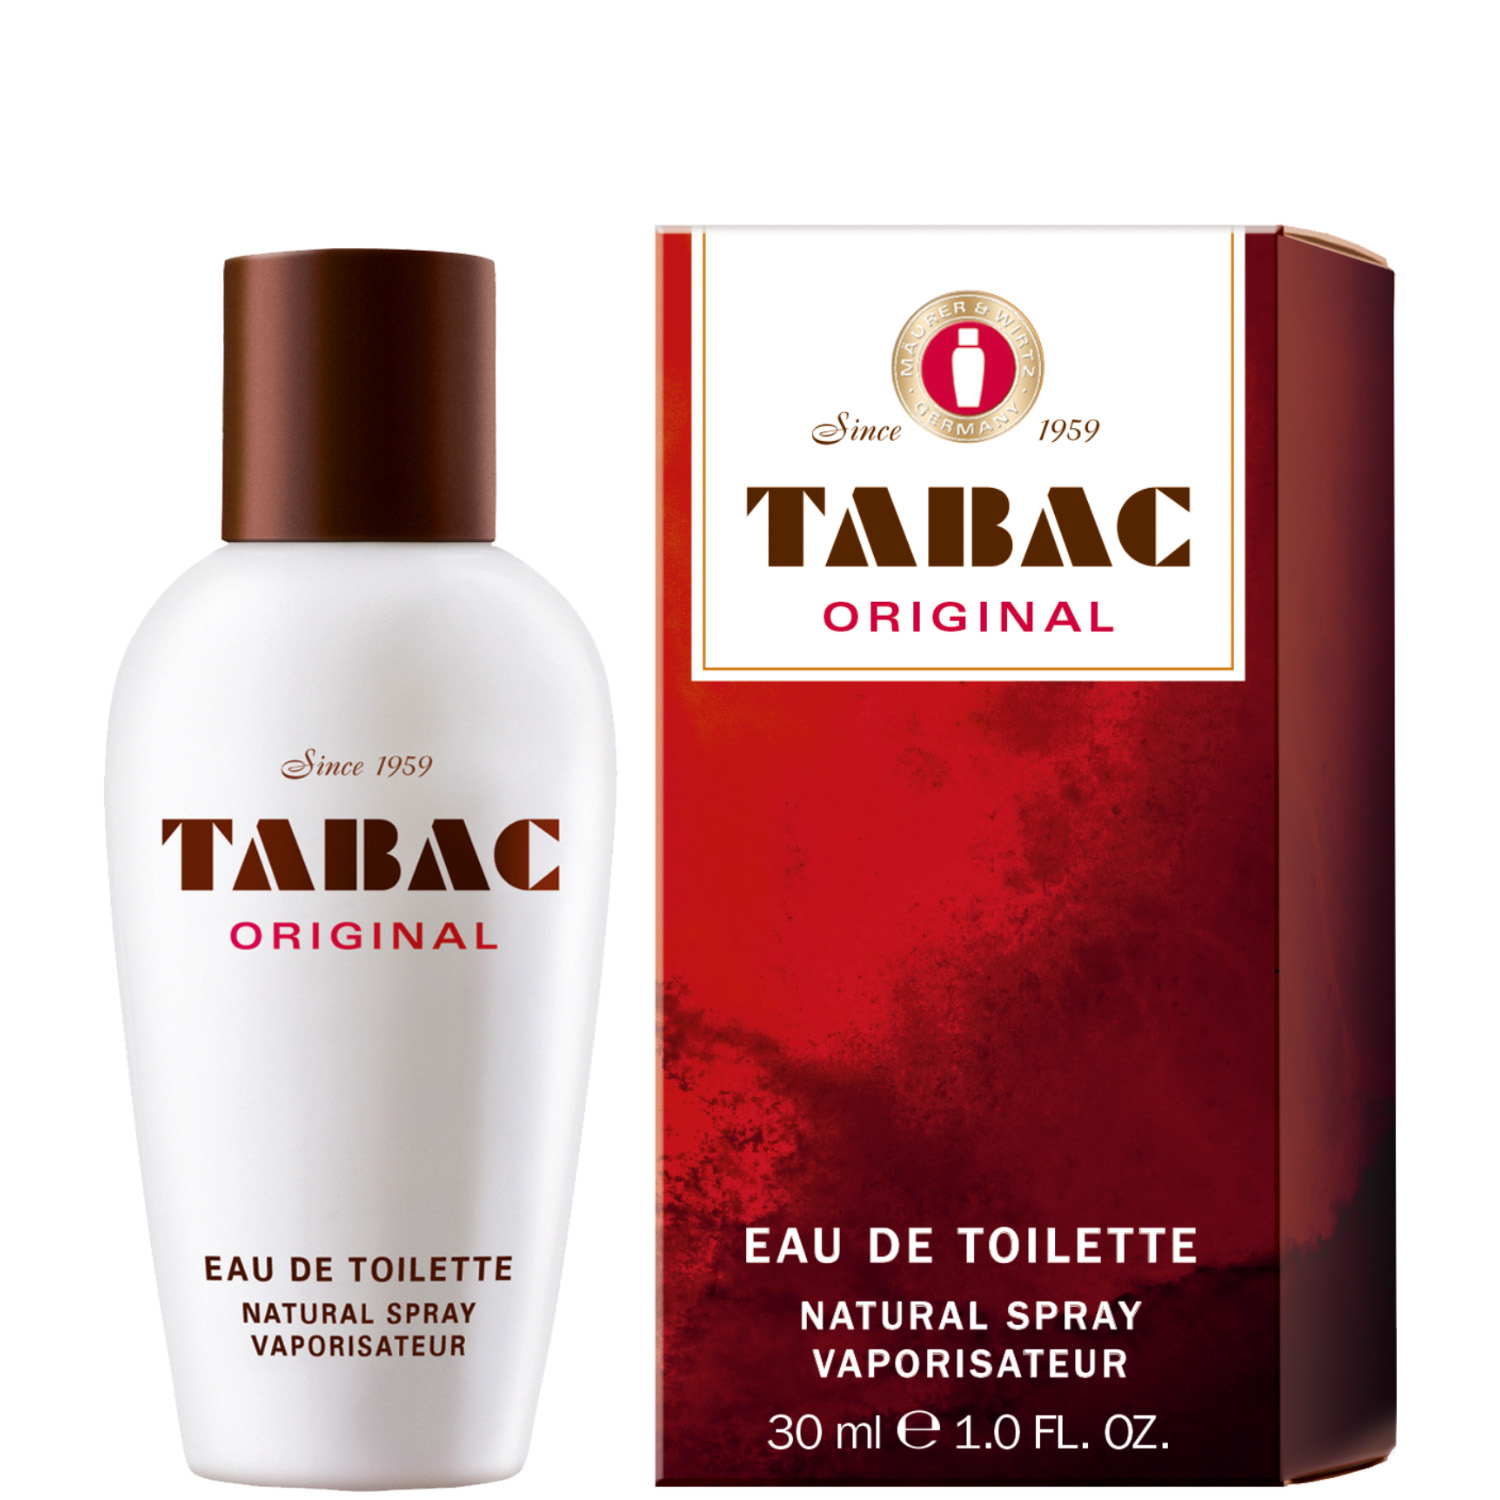 Tabac Original Eau de Toilette 30ml